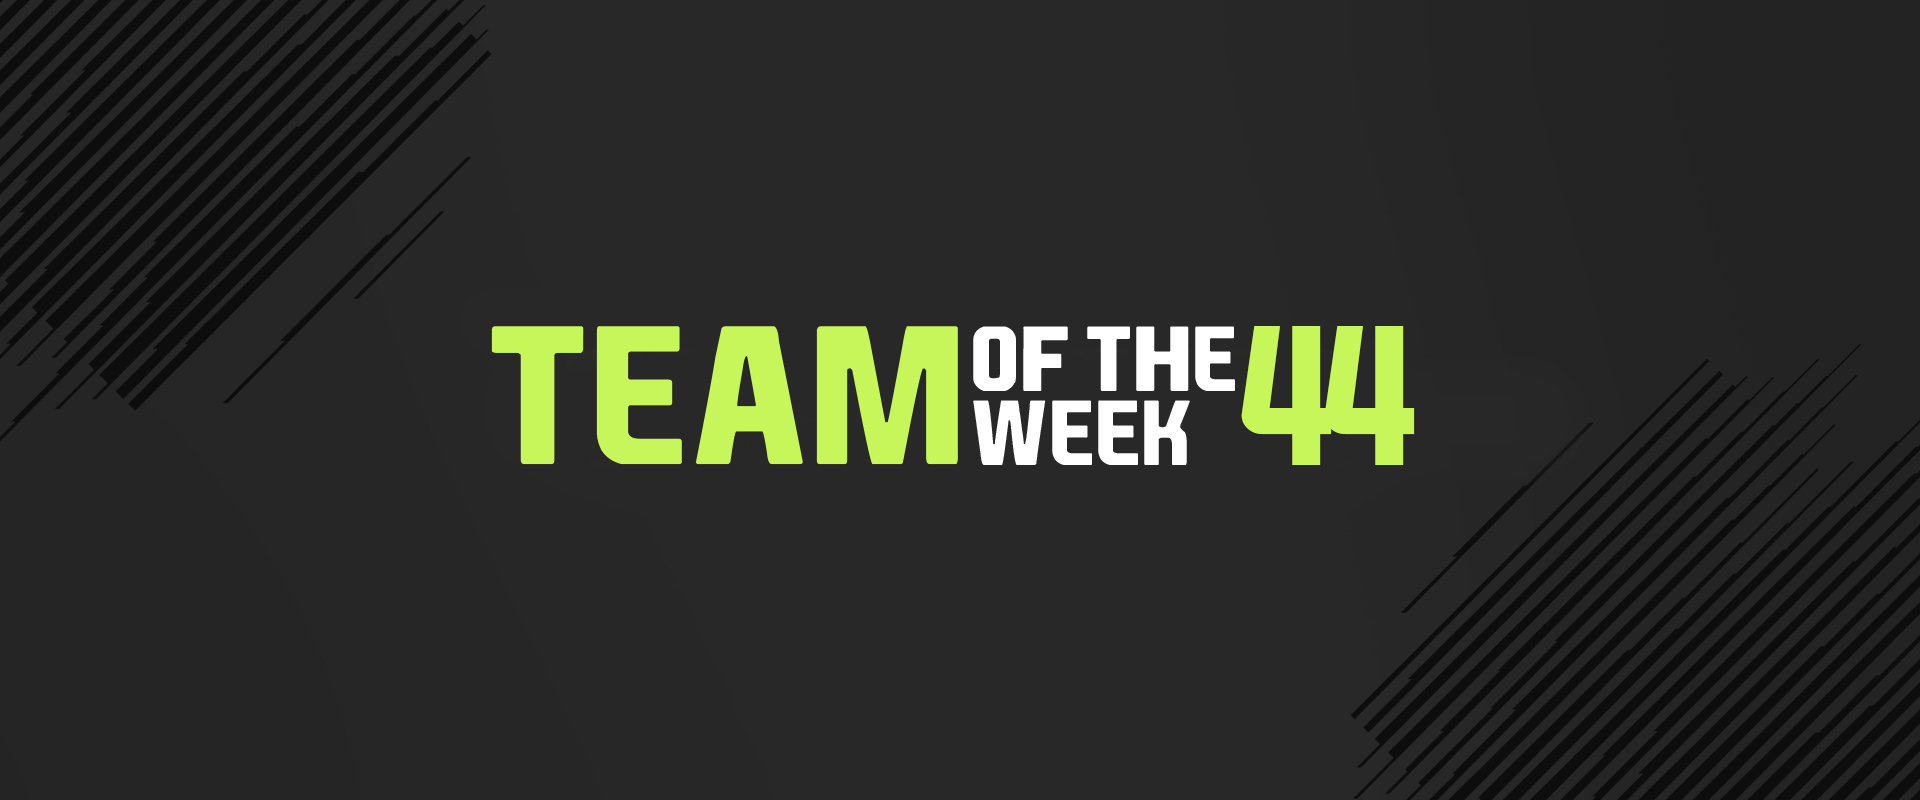 Record breaker lappal tűzdelt a legújabb Team of the Week csapat!